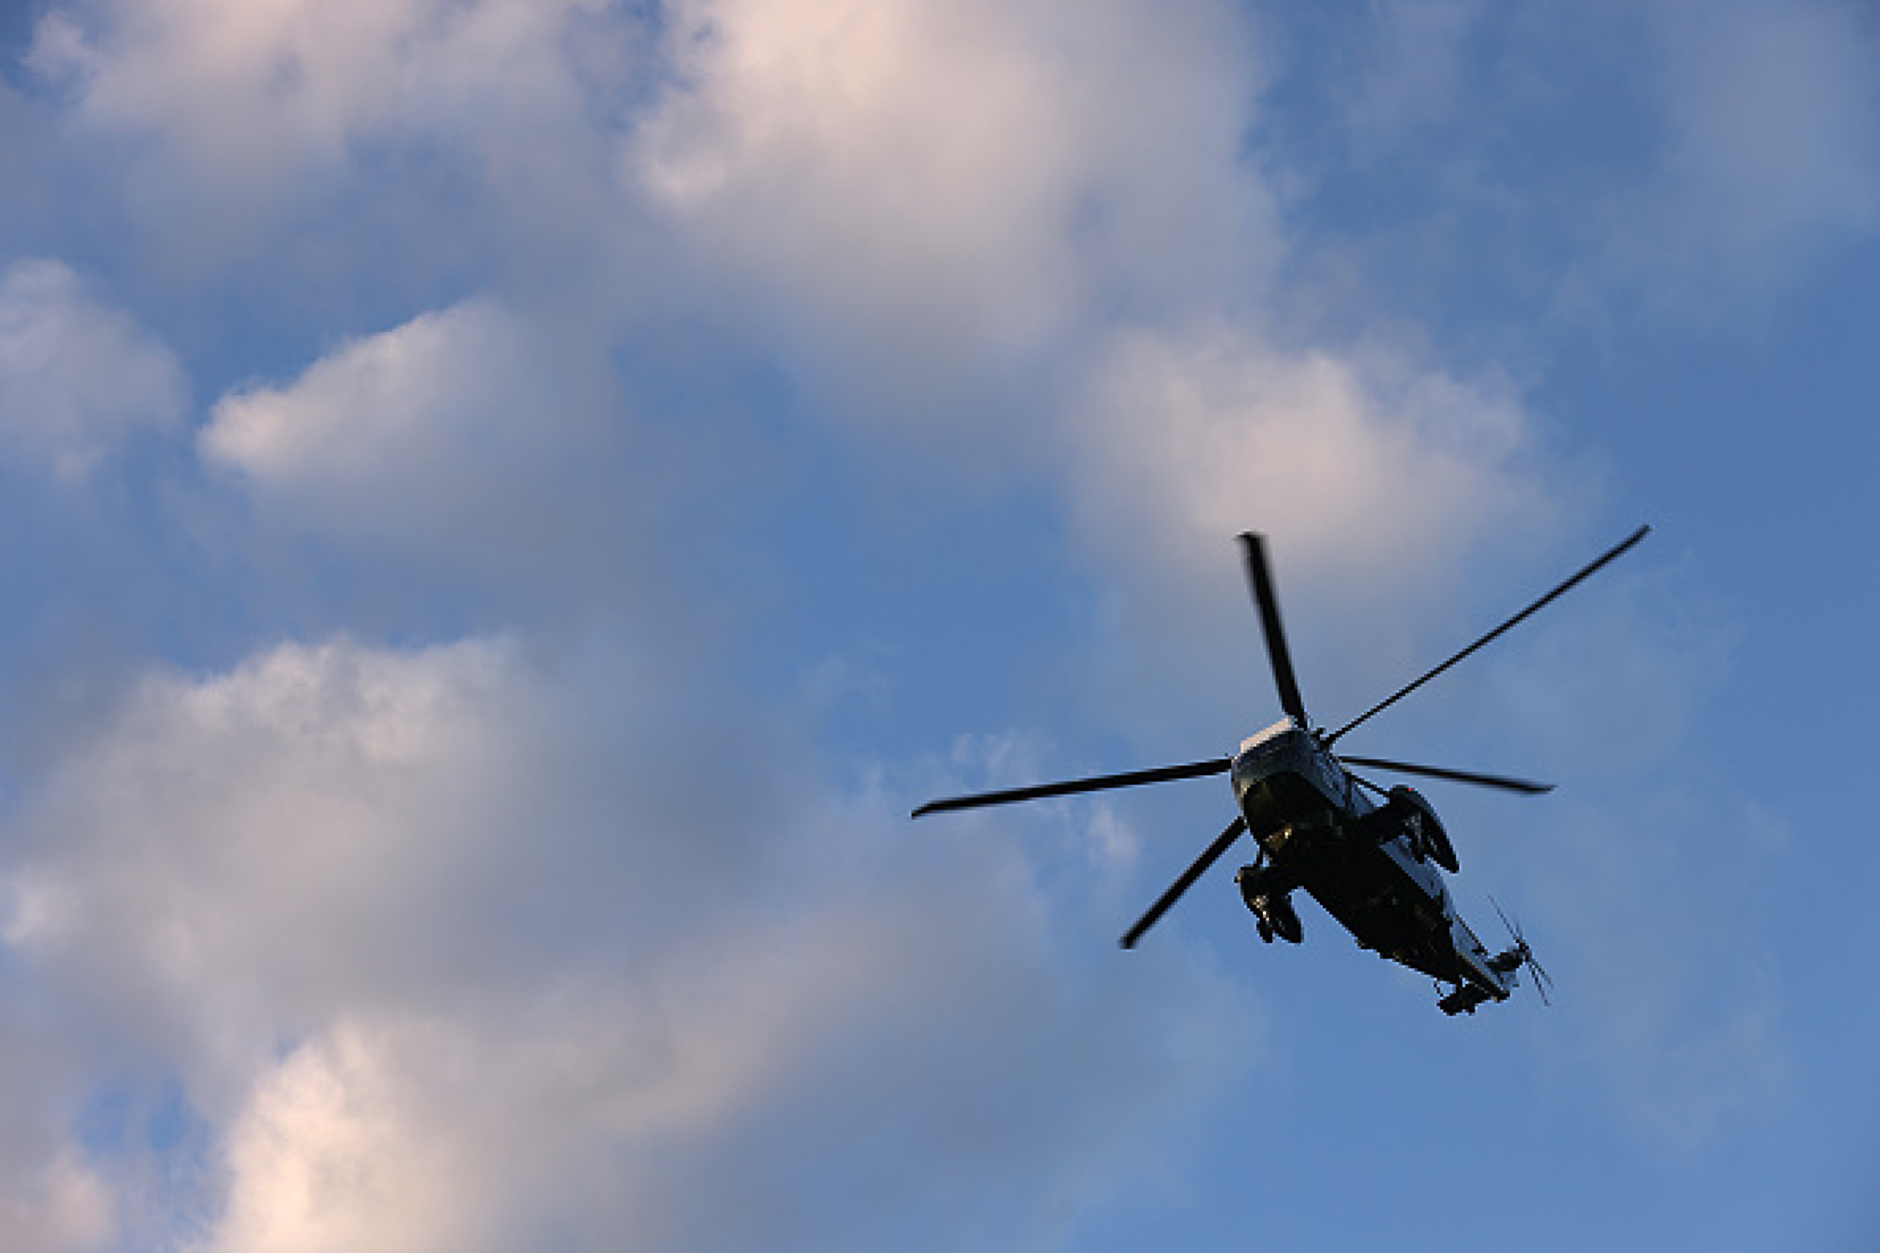 Два спешни медицински вертолета ще са базирани в Долна Митрополия и летище „Враждебна“